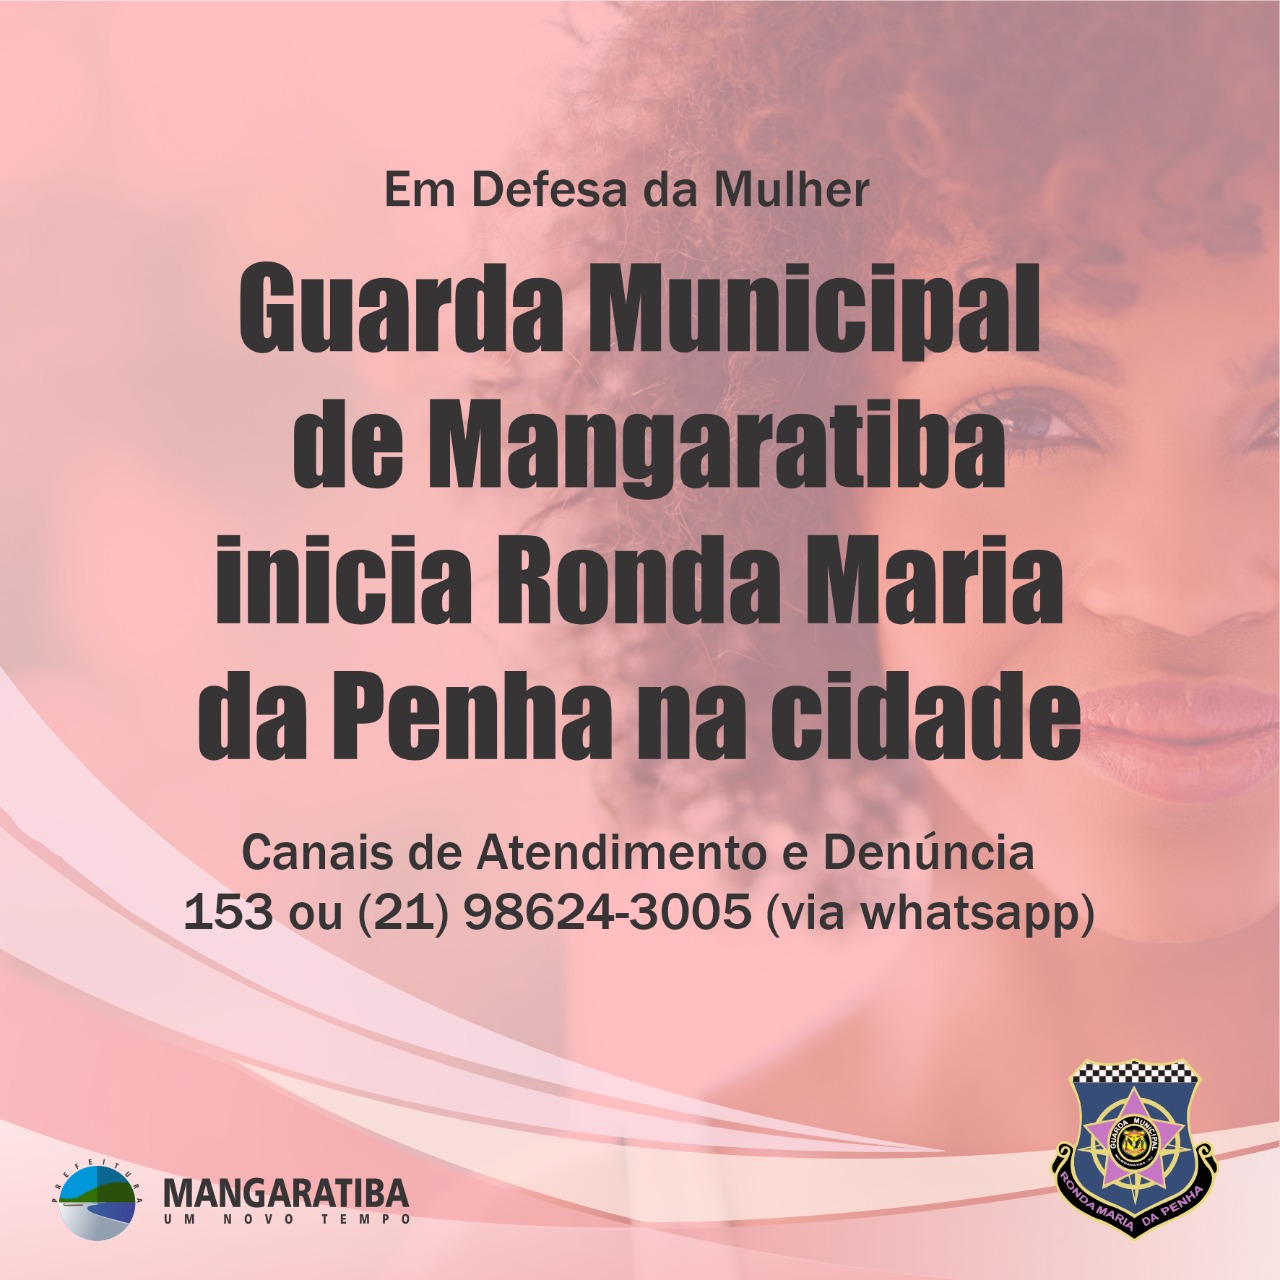 Guarda Municipal de Mangaratiba ganha canal de atendimento para mulheres vítimas de violência